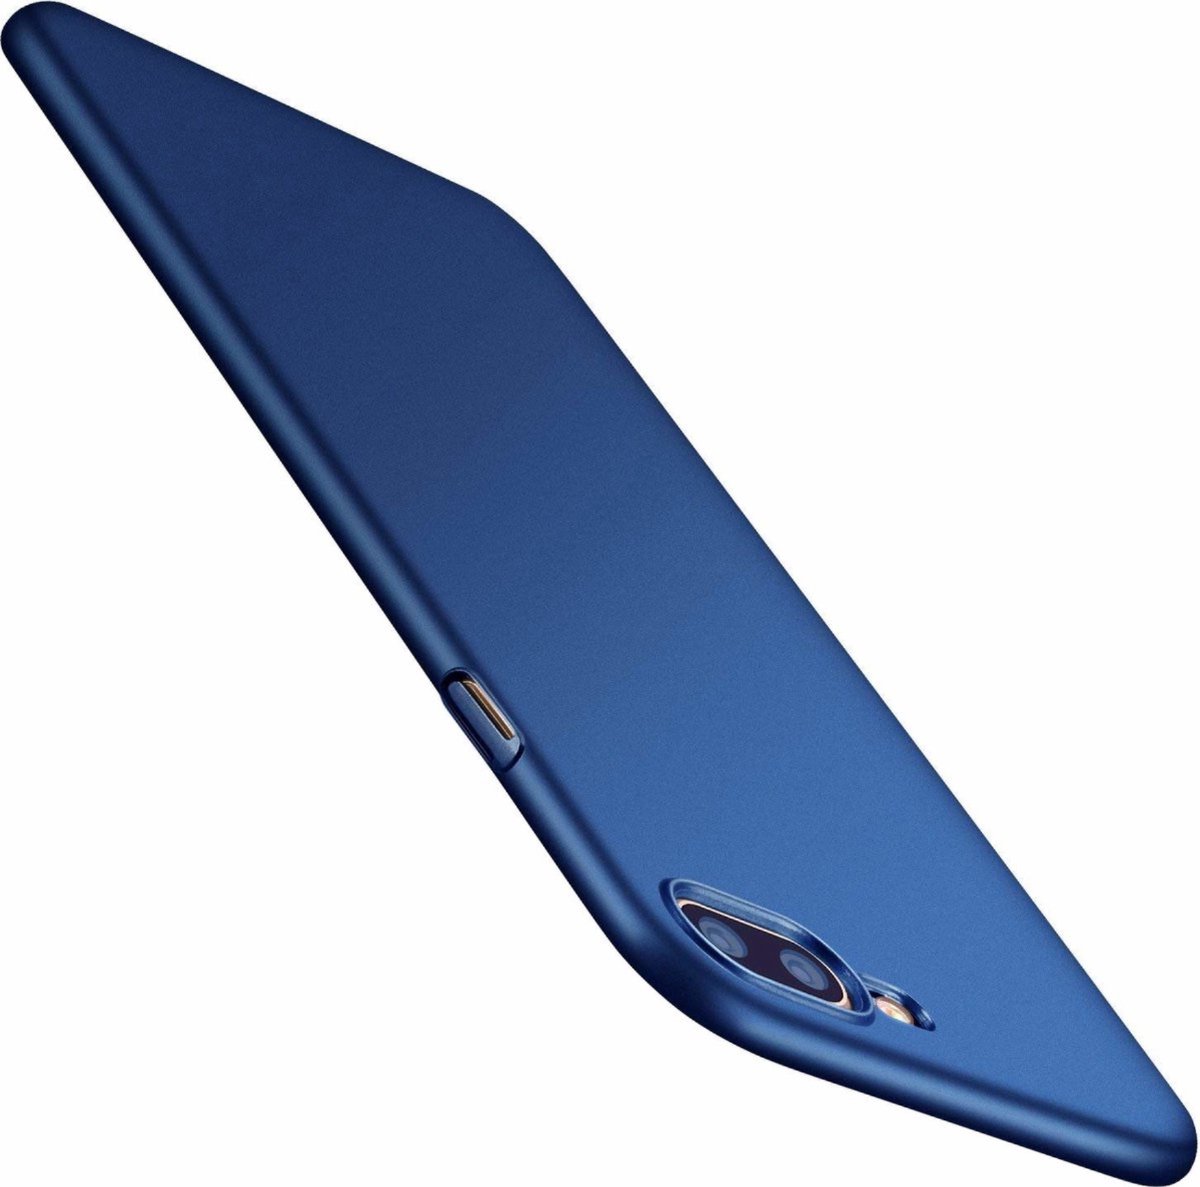 CHPN -Telefoonhoes - Telefooncover - Geschikt voor Apple iPhone 7/8 Plus - Telefoon hoesje - Blauw - Smartphone hoesje - Blauw telefoonhoesje - Dun hoesje